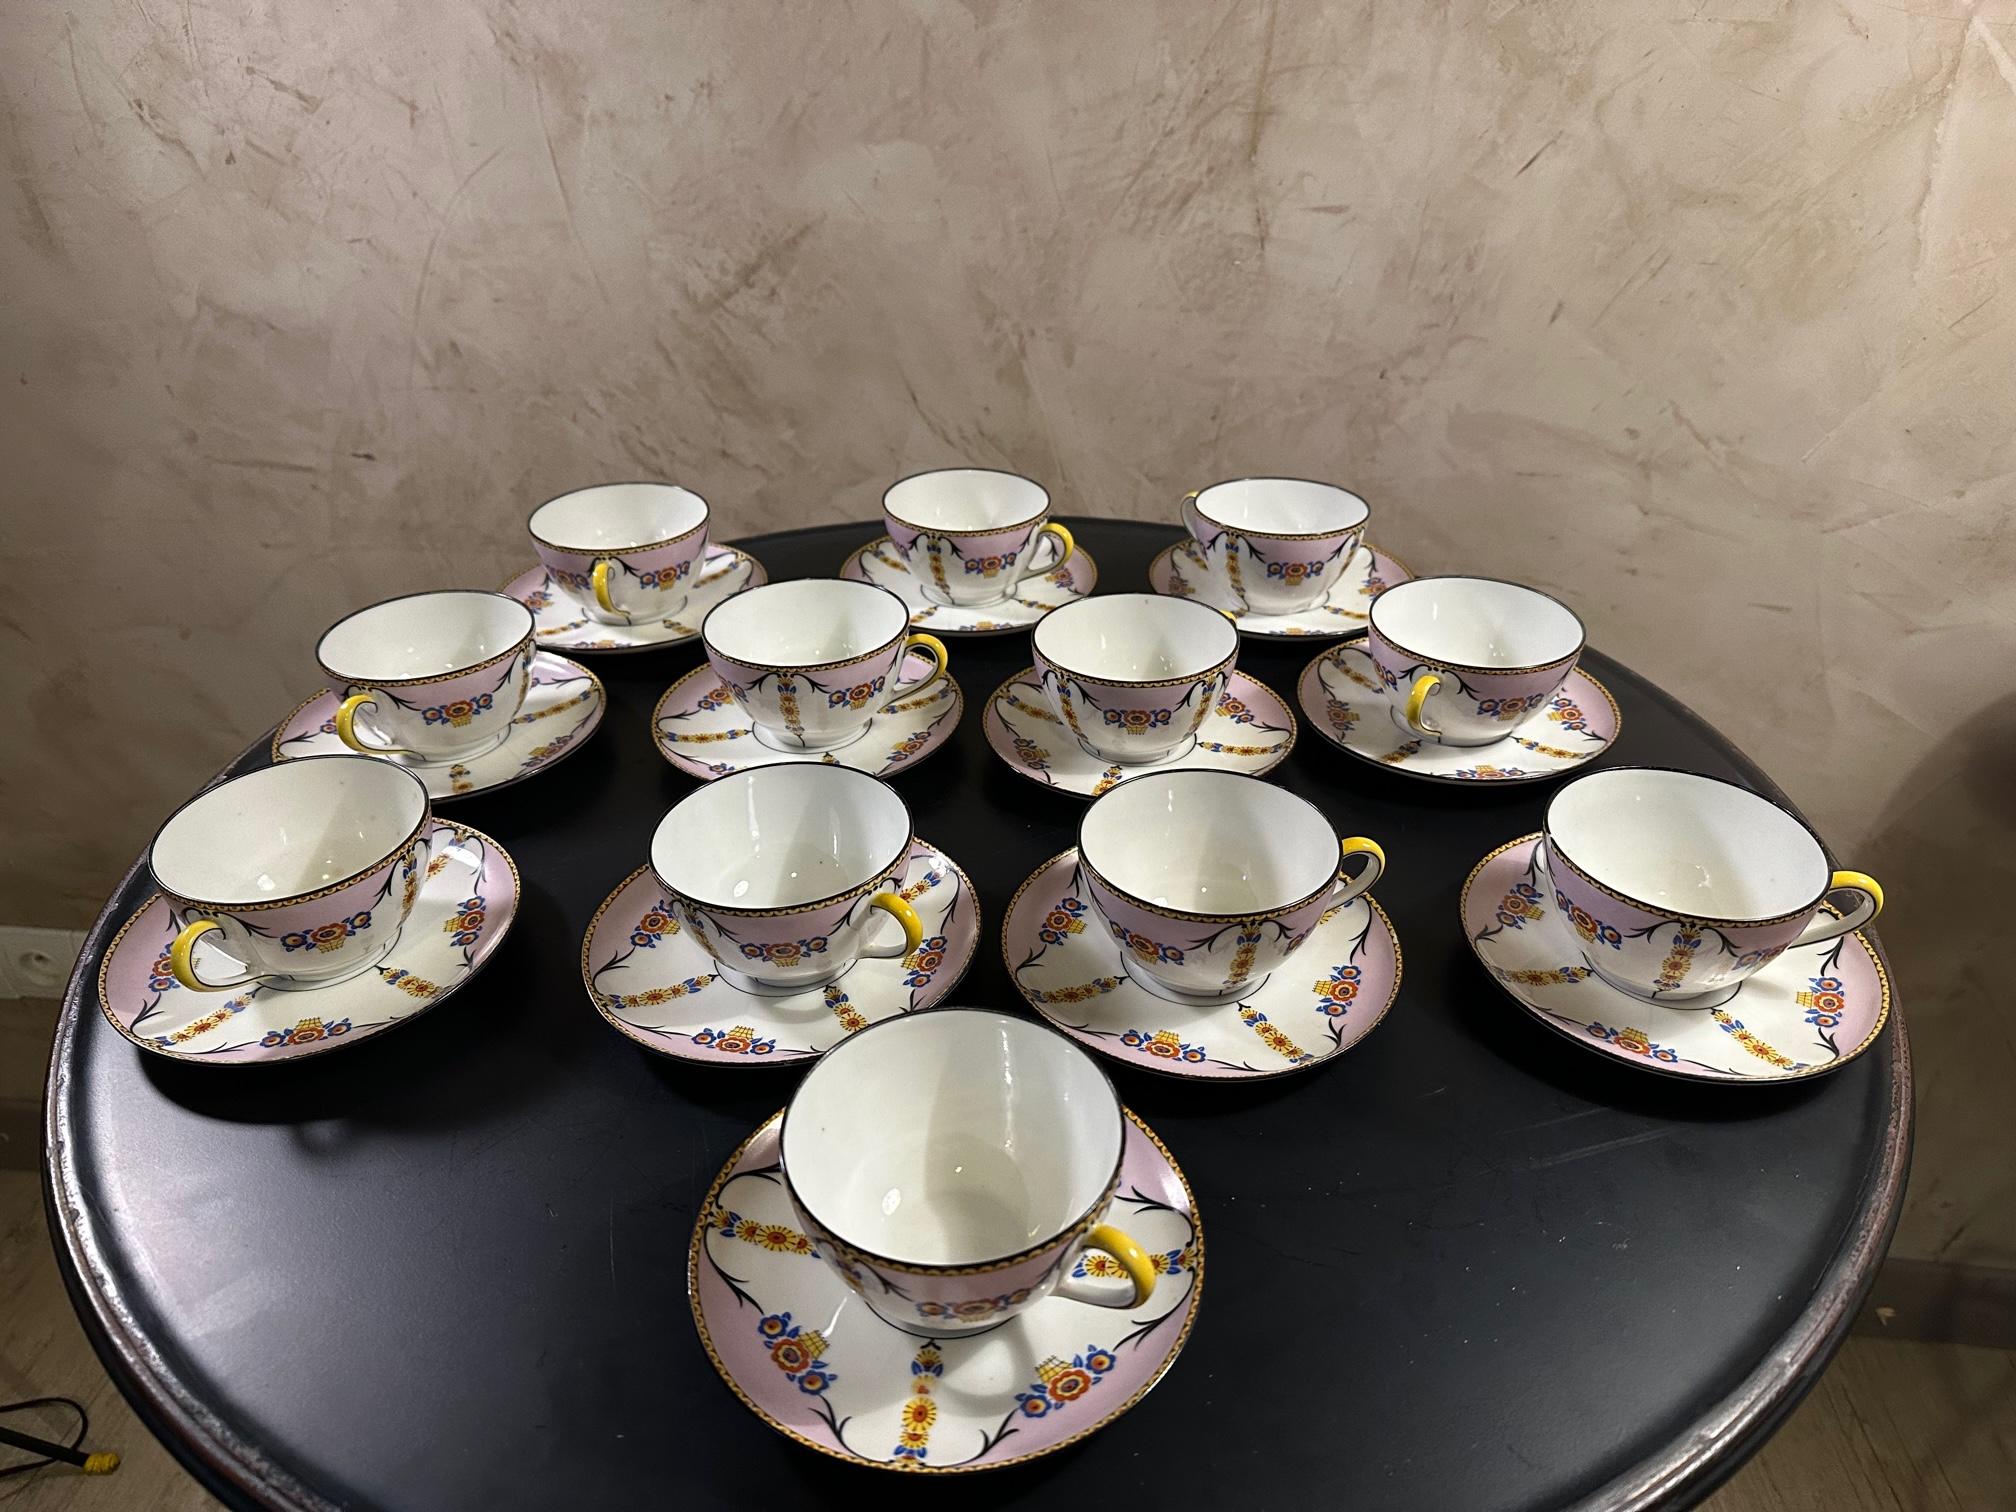 Très beau service à café avec leurs soucoupes en porcelaine de Limoges datant de 1925 en bon état.
Jolie couleur rose et fleurs bleues et jaunes.
Un seul gobelet est légèrement fissuré mais l'ensemble est en très bon état.